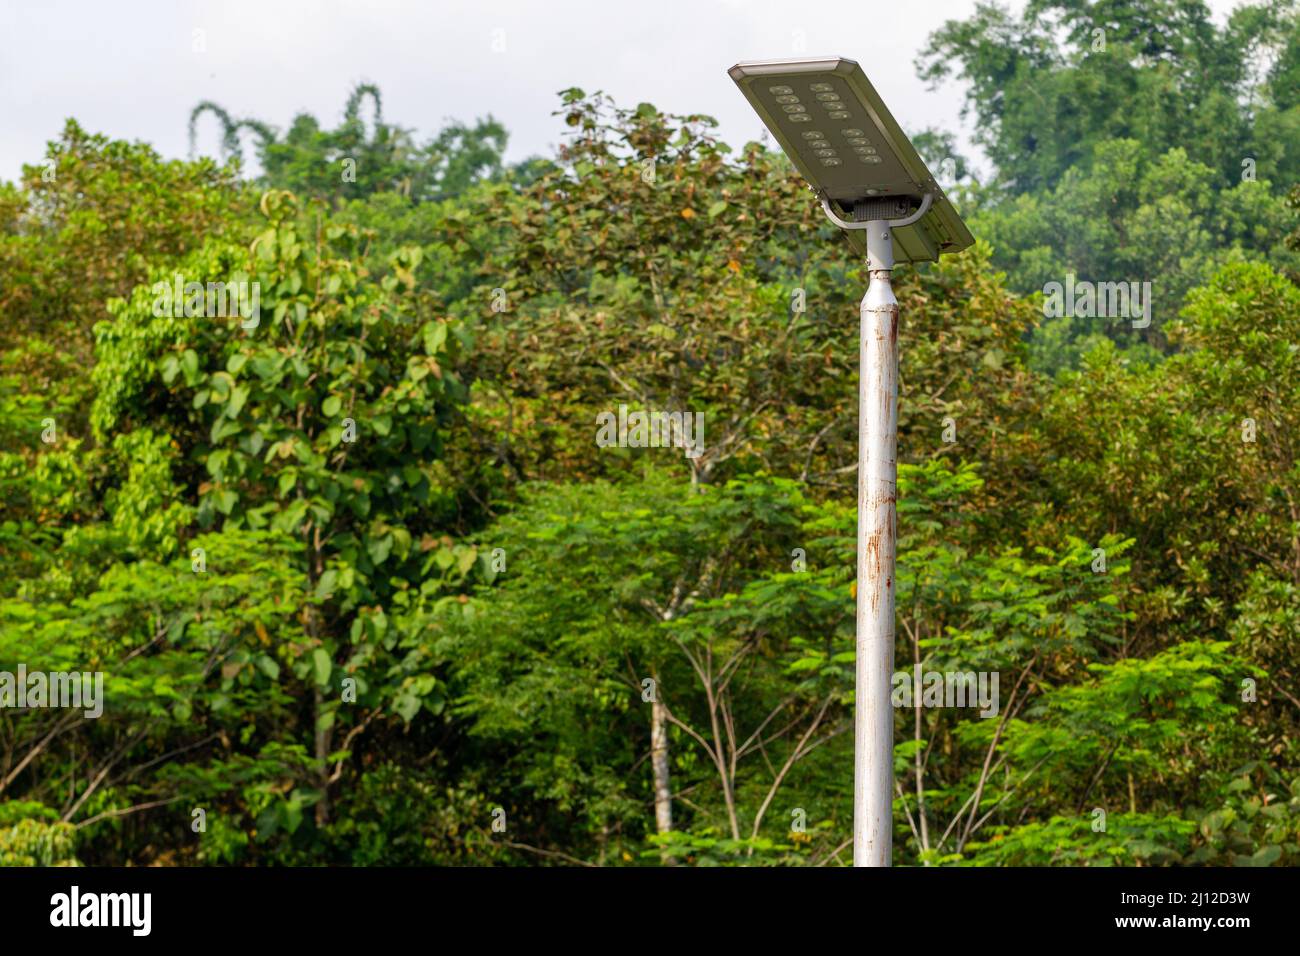 L'uso di pannelli solari per soddisfare le esigenze di energia elettrica in aree tropicali che hanno abbondante luce solare, conservazione delle risorse naturali Foto Stock